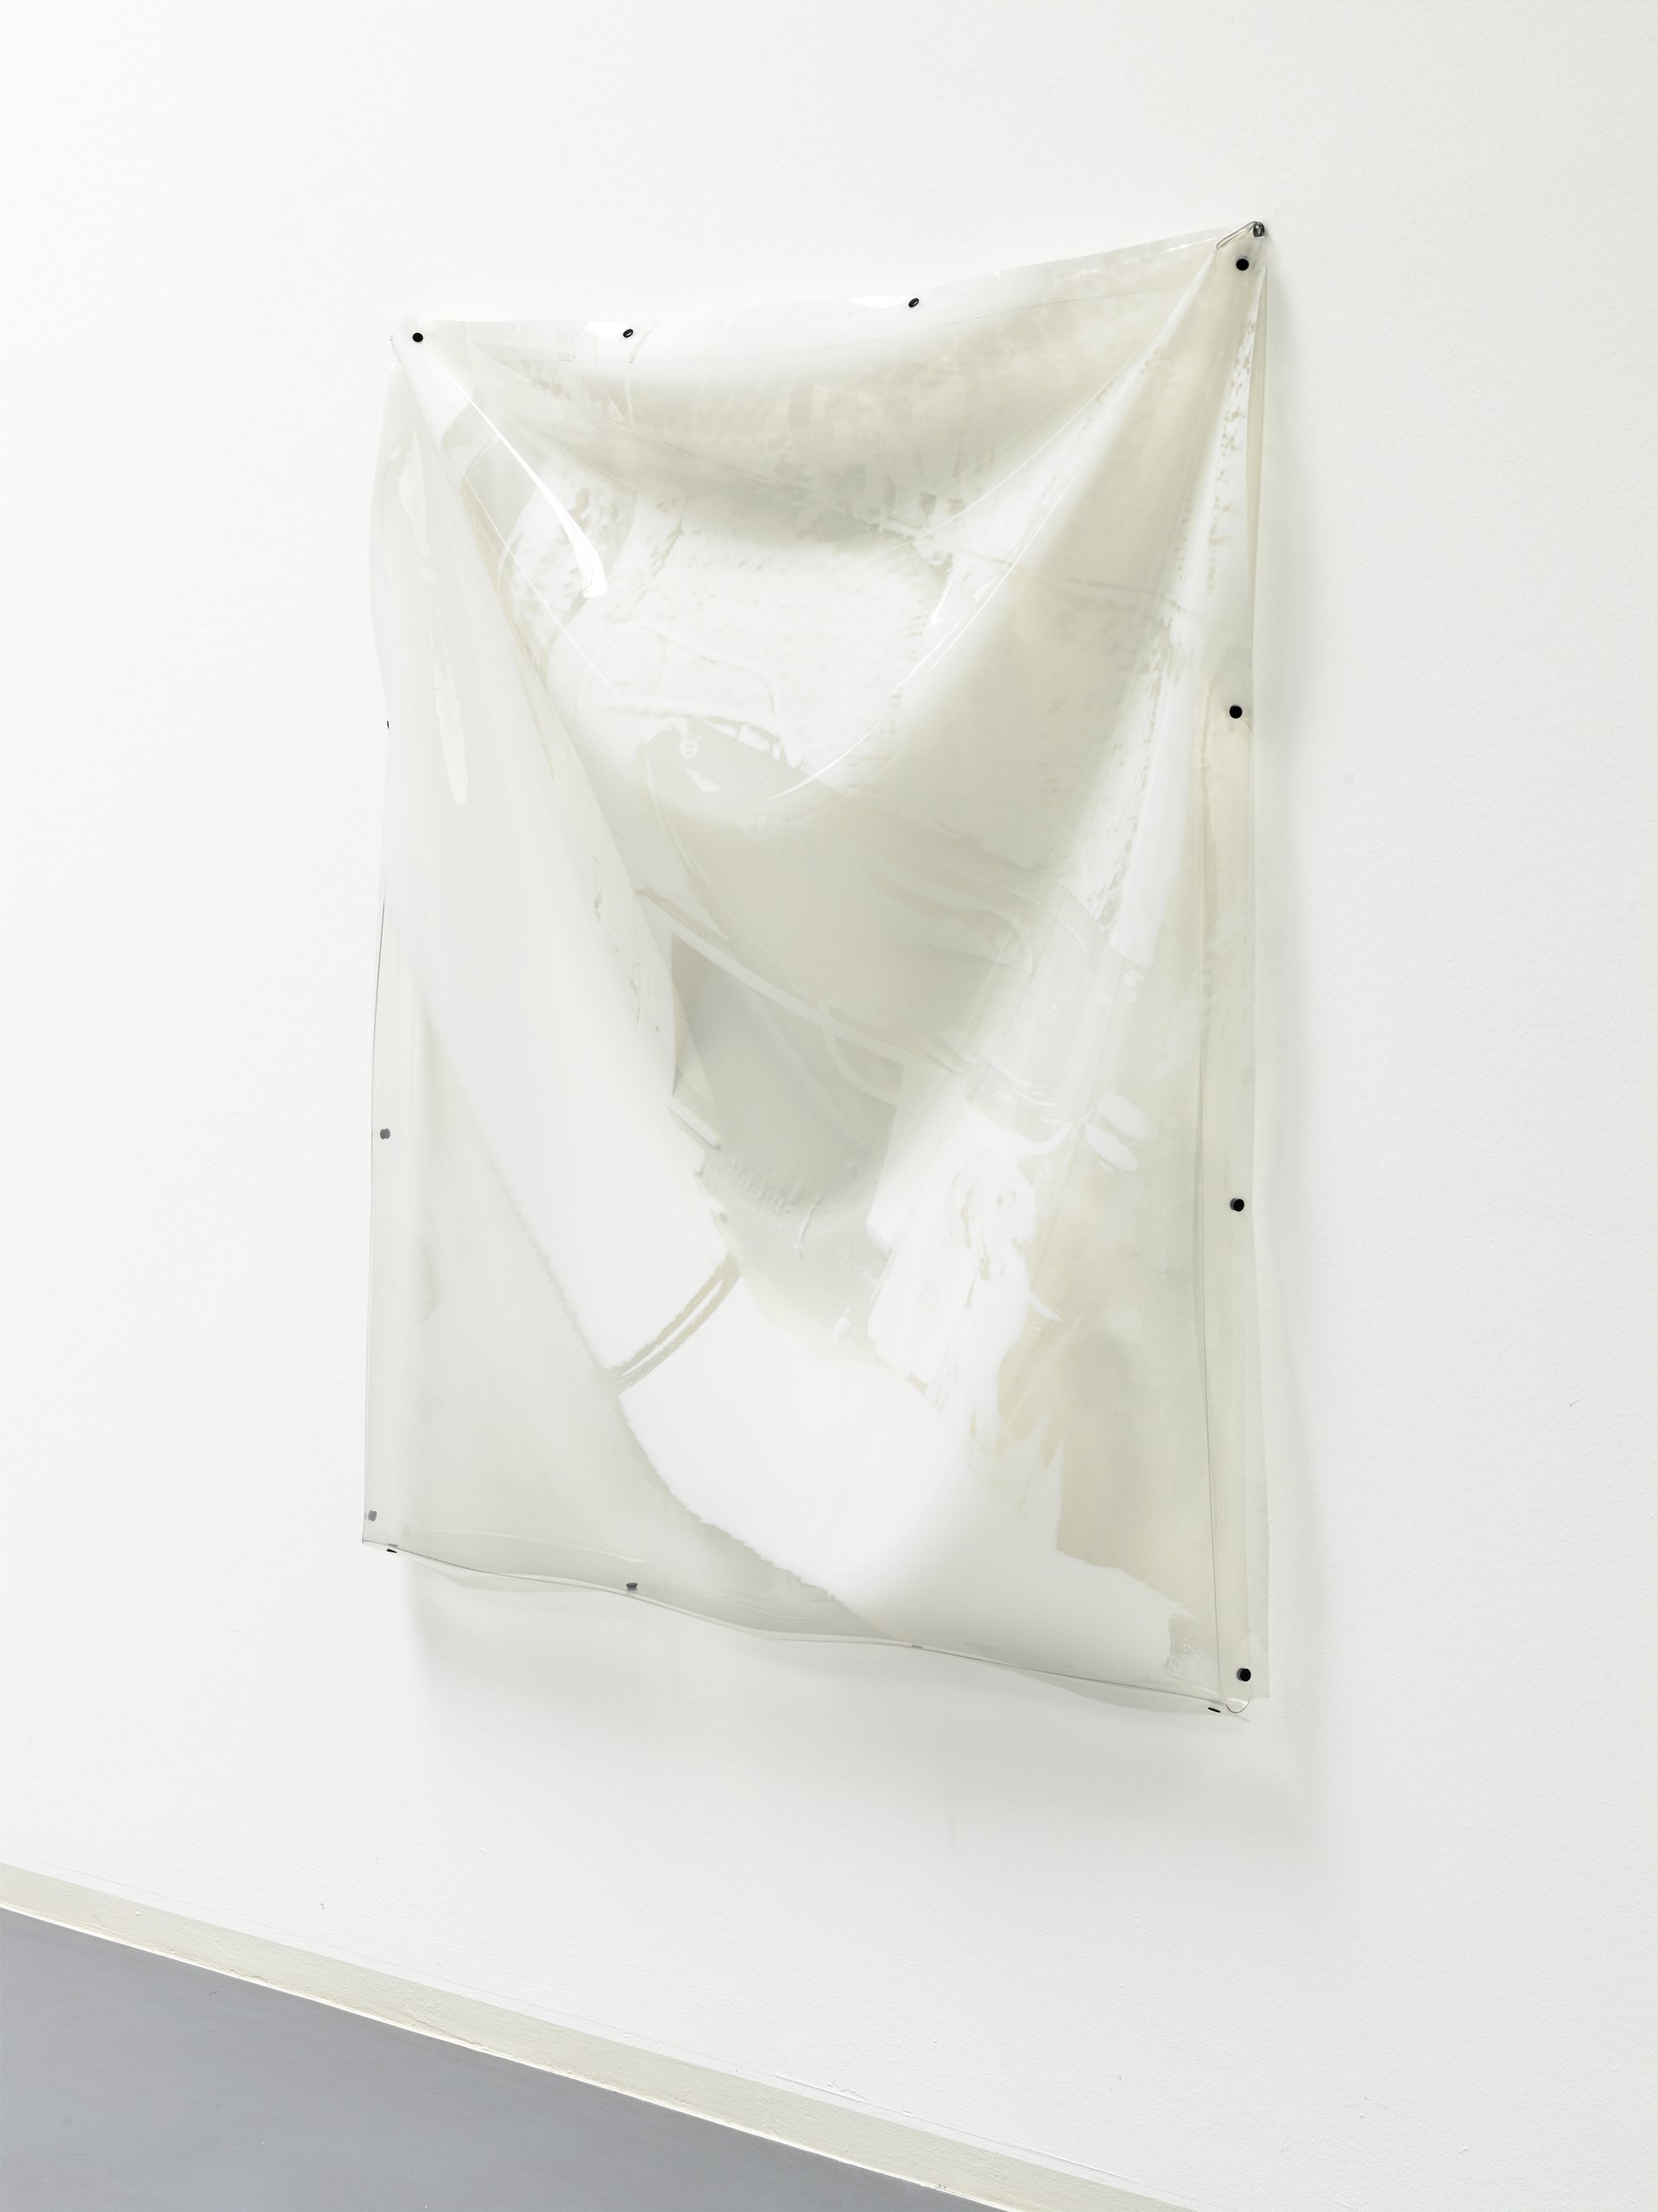 Alexander Bornschein, o.T., installation view, 2015, Bonner Kunstverein, Courtesy of the artist. Photo: Simon Vogel